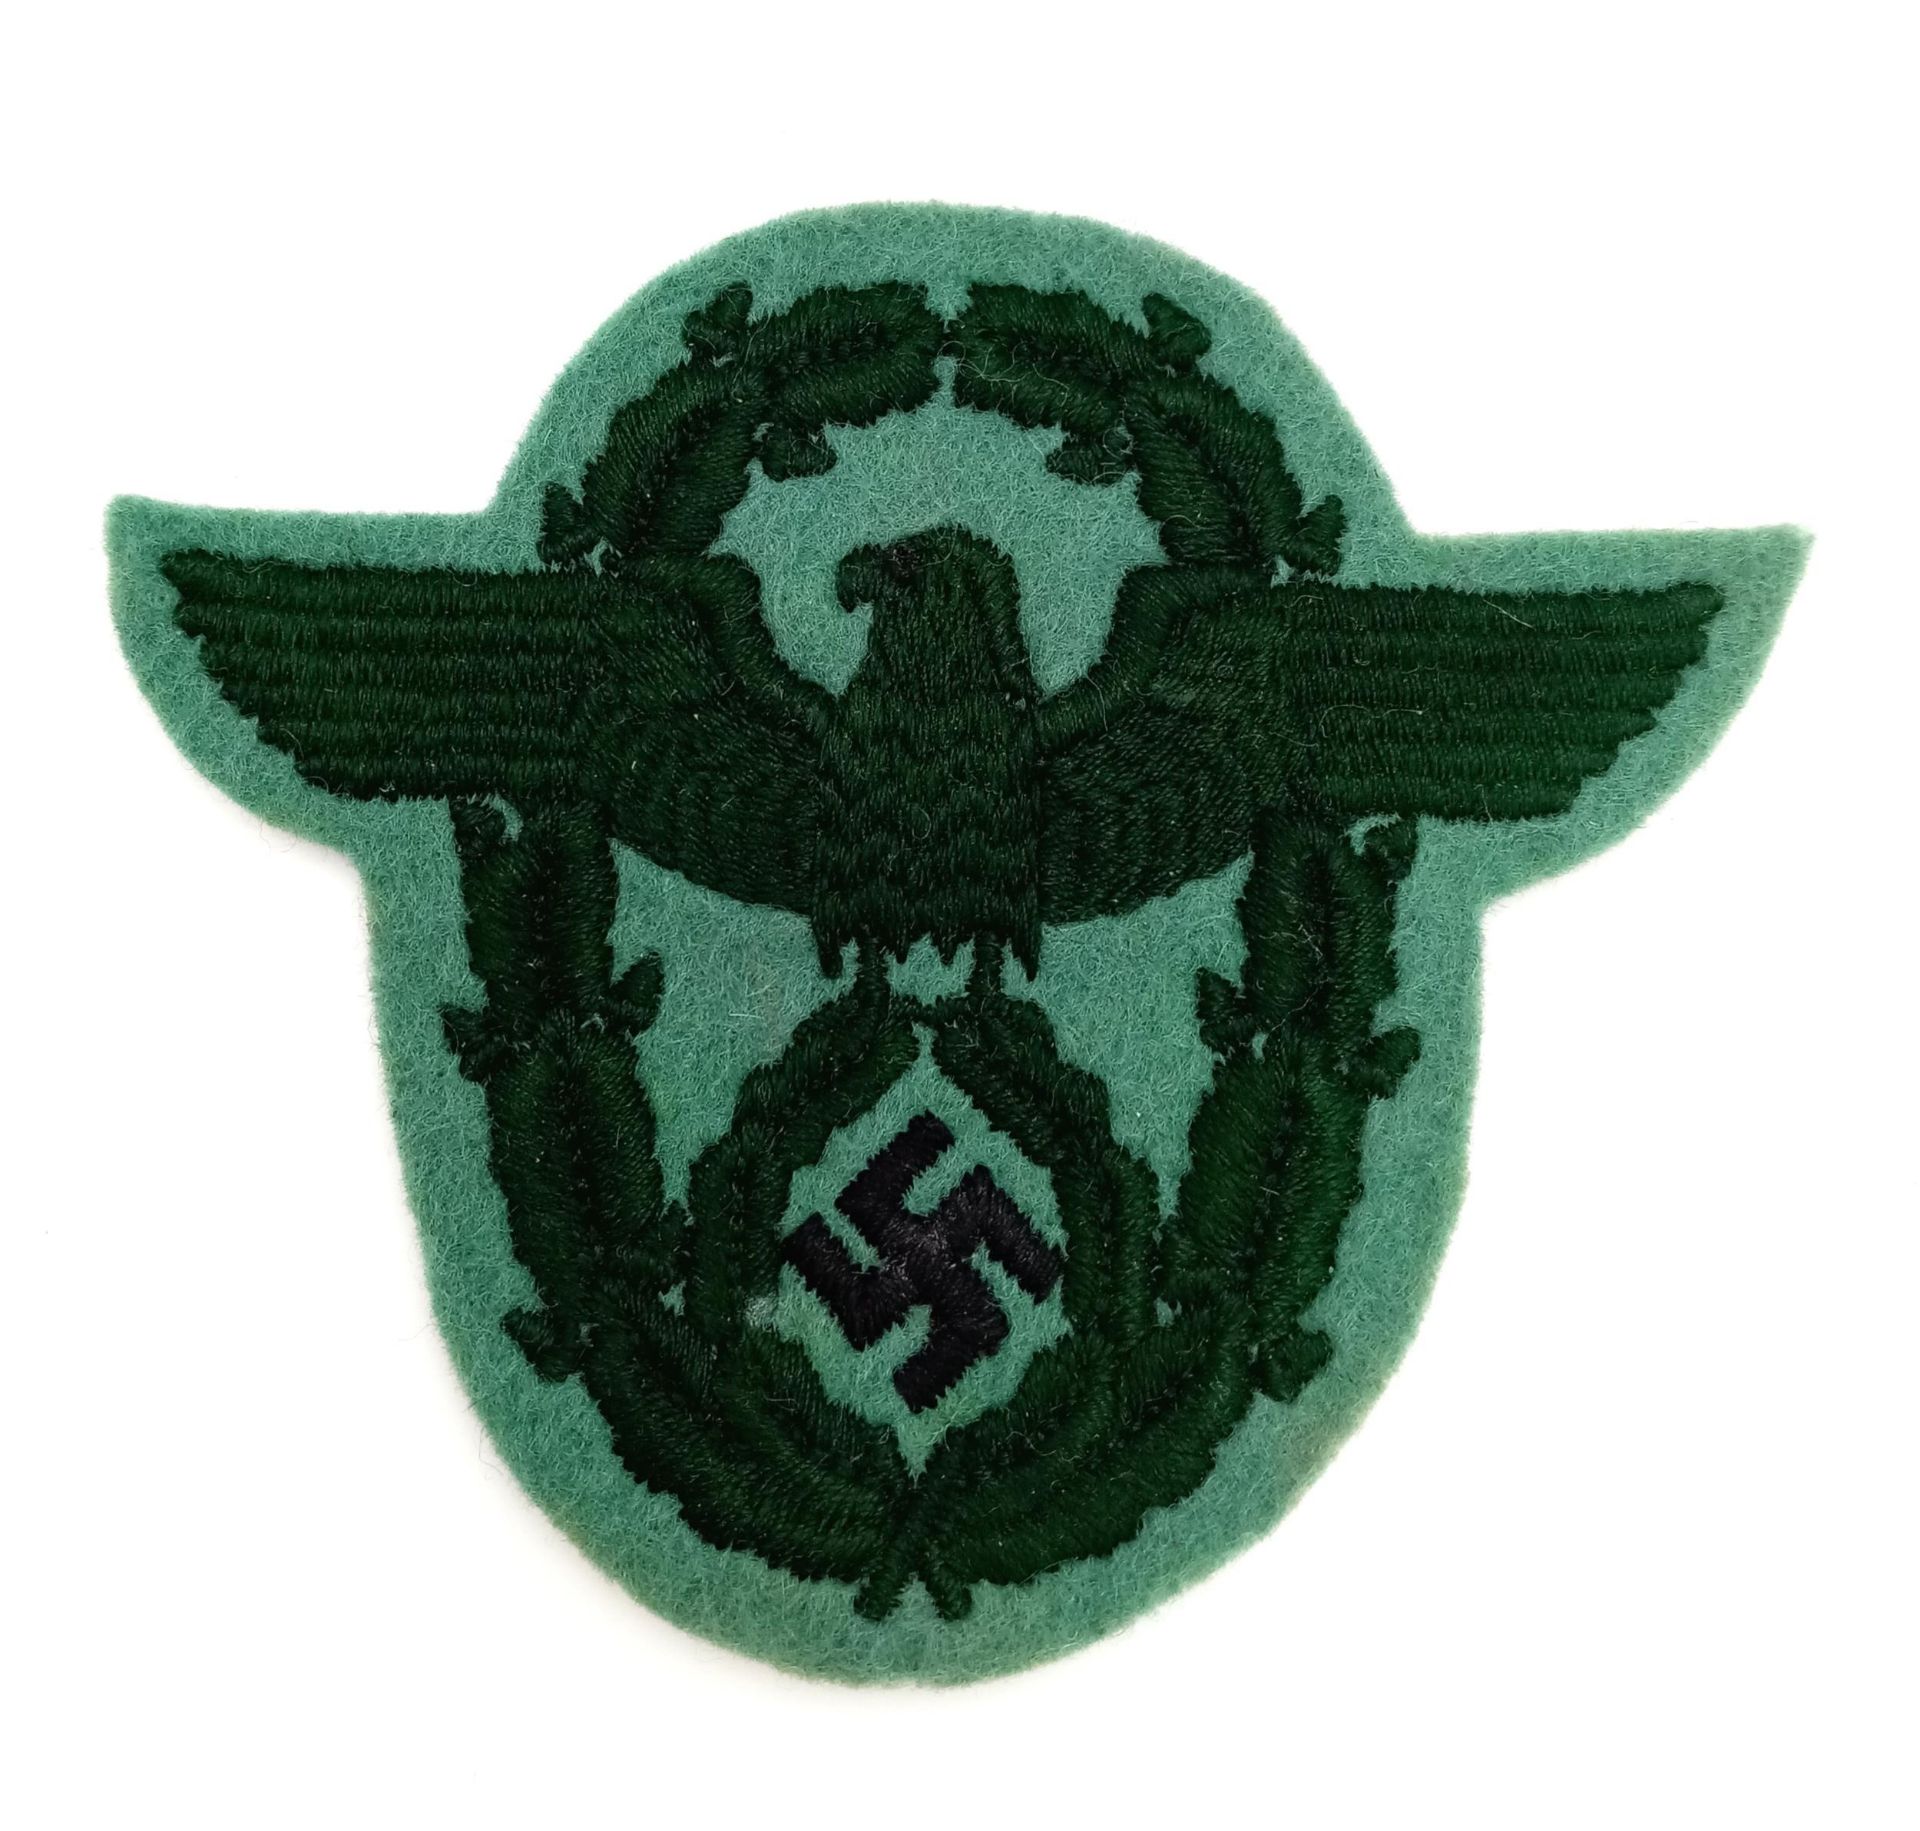 WW2 German SchutzPolizei Sleeve Eagle.